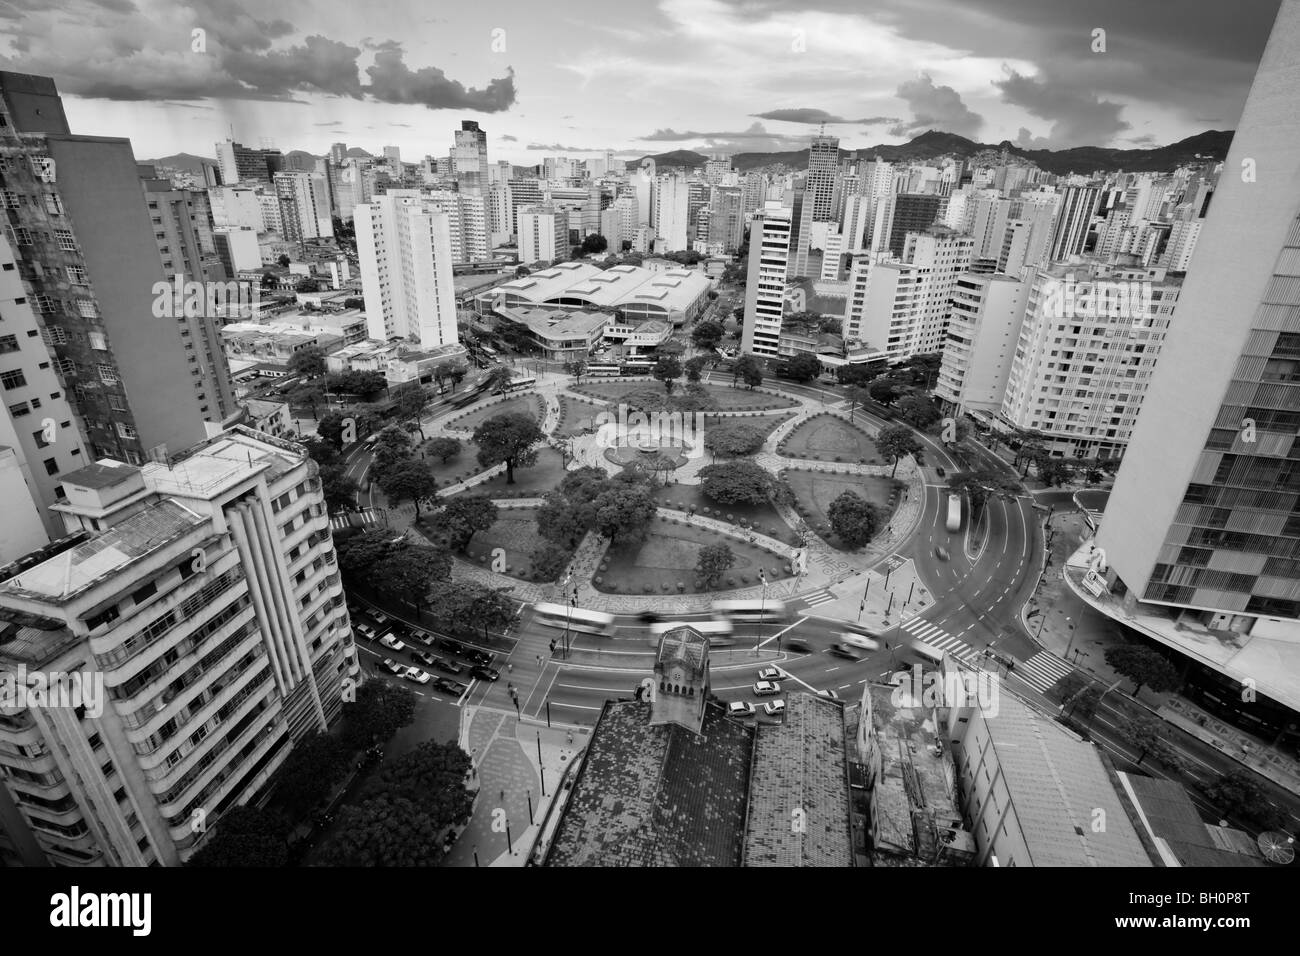 Vue aérienne de Raul Soares Square, dans le centre-ville de Belo Horizonte, Minas Gerais, Brésil. Banque D'Images